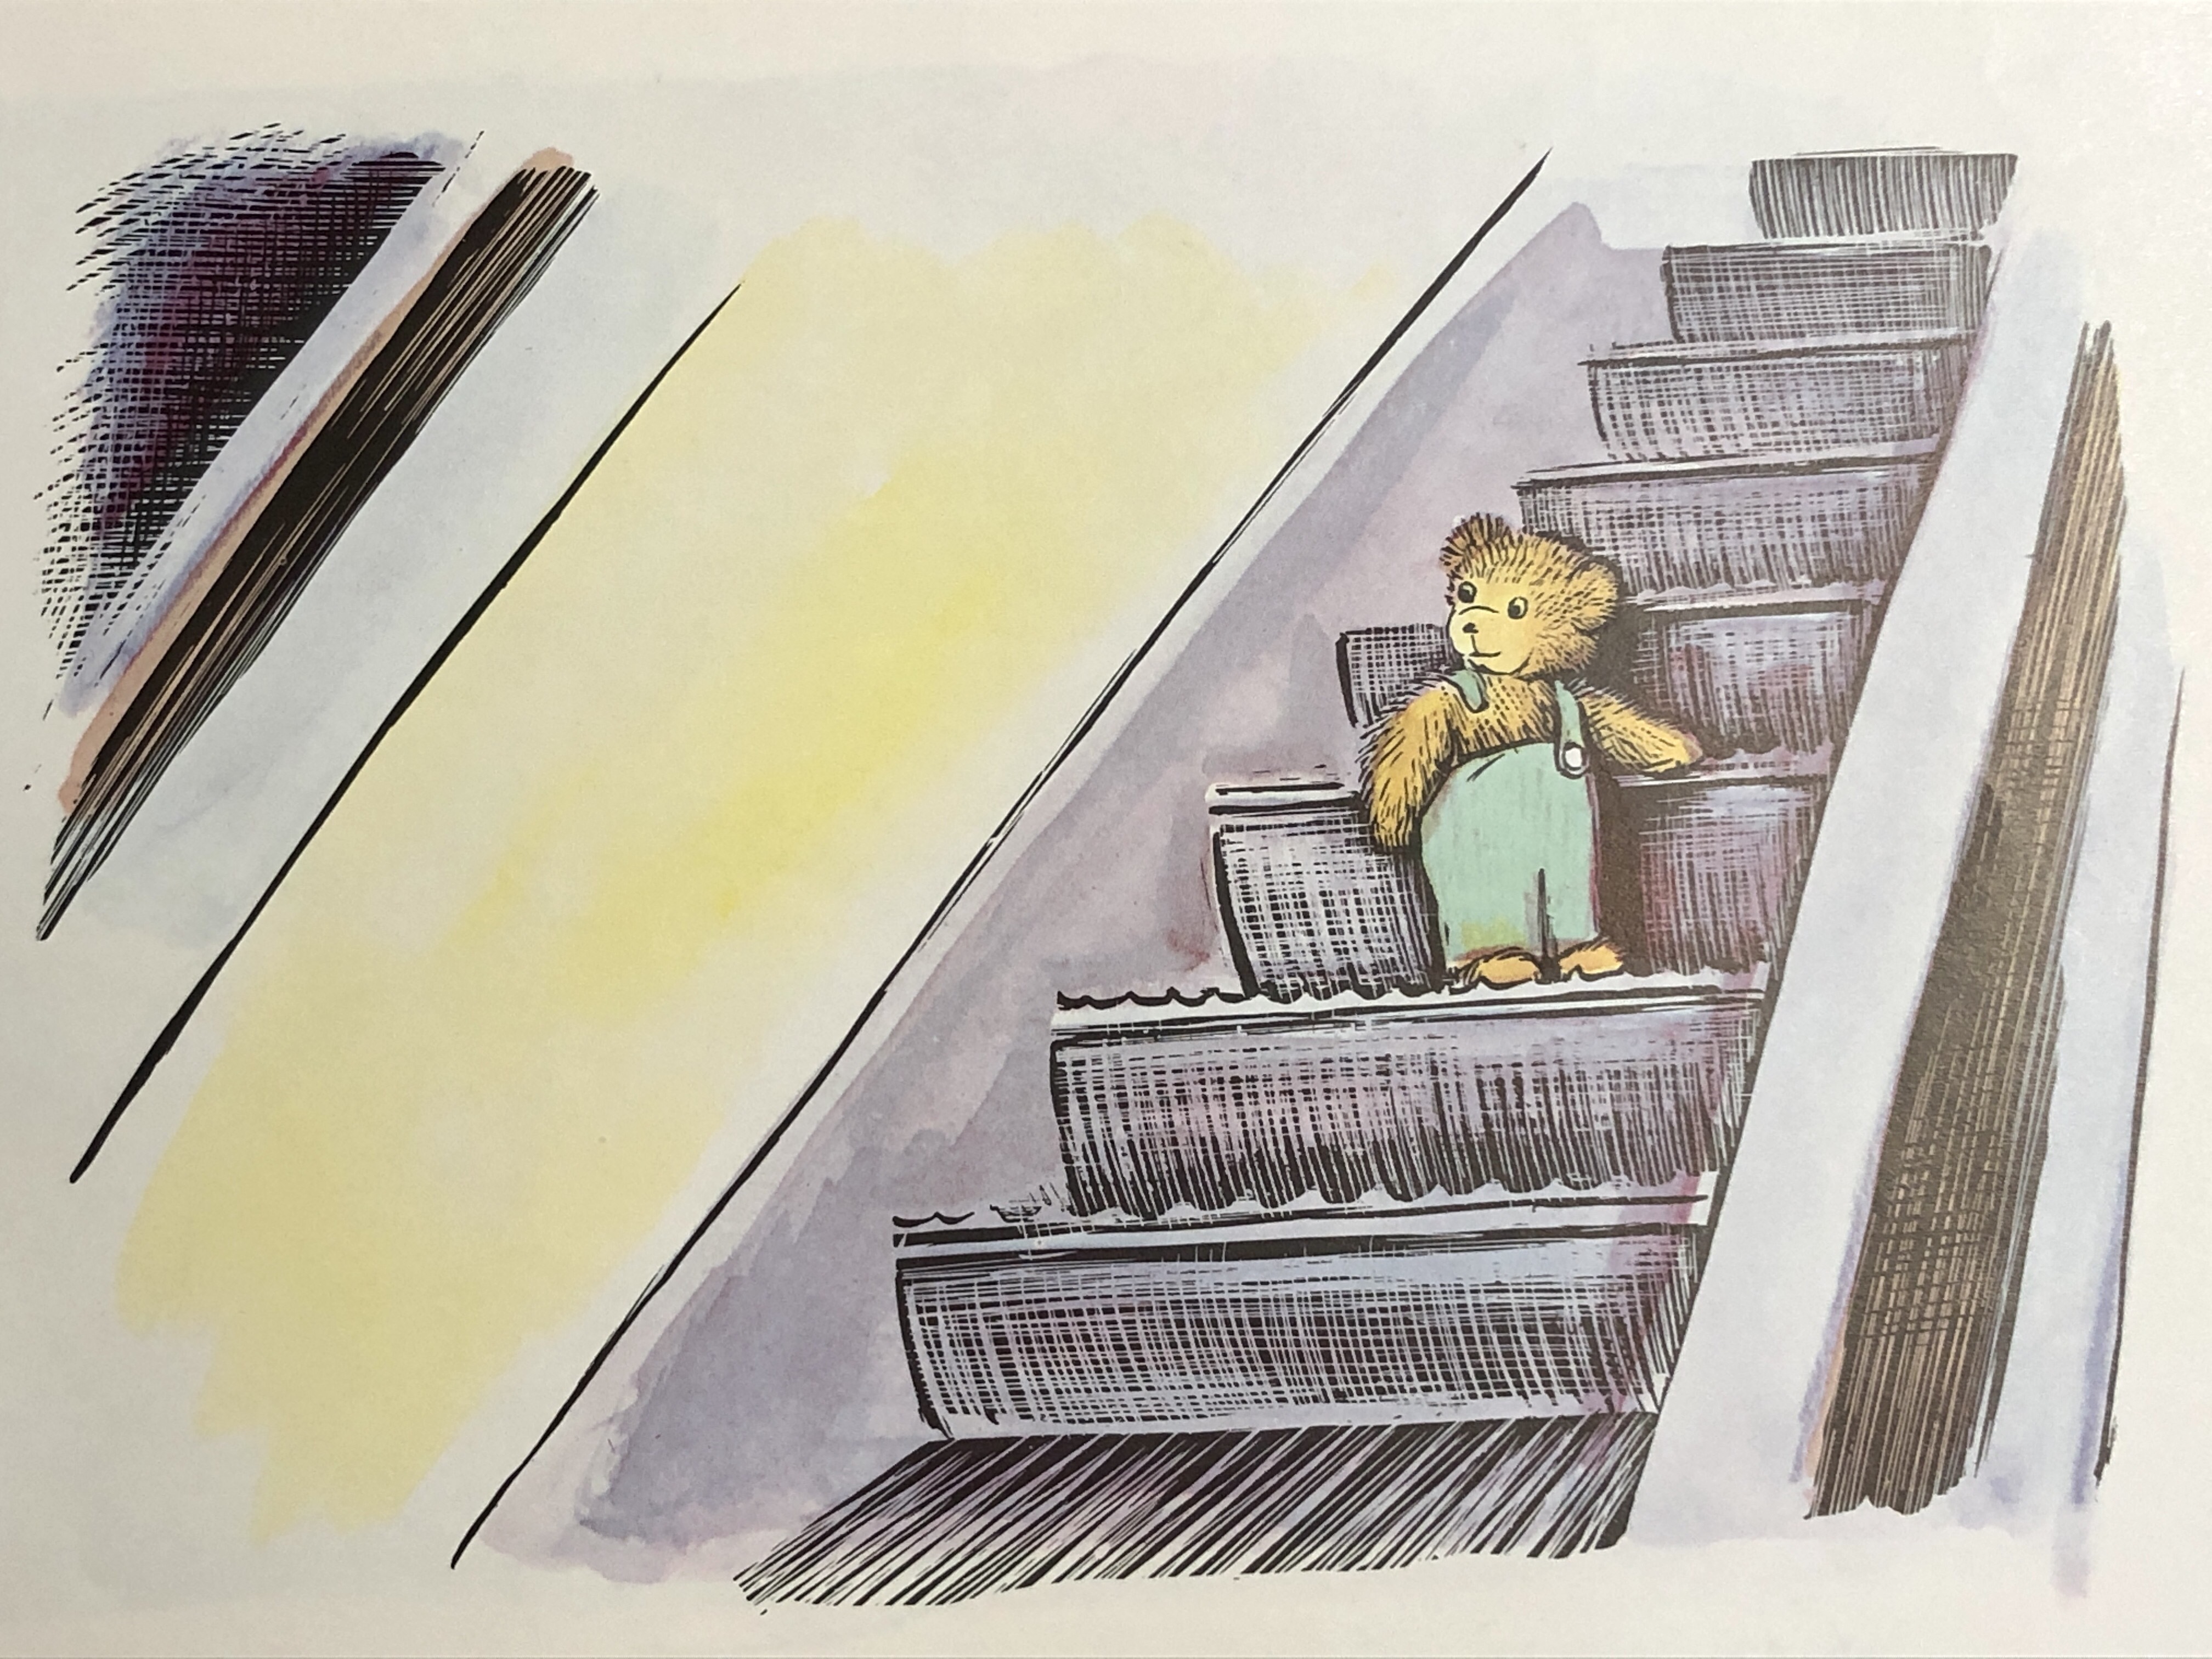 圖說：小熊可可在無人的百貨公司搭電梯。圖片取自《小熊可可》內頁。